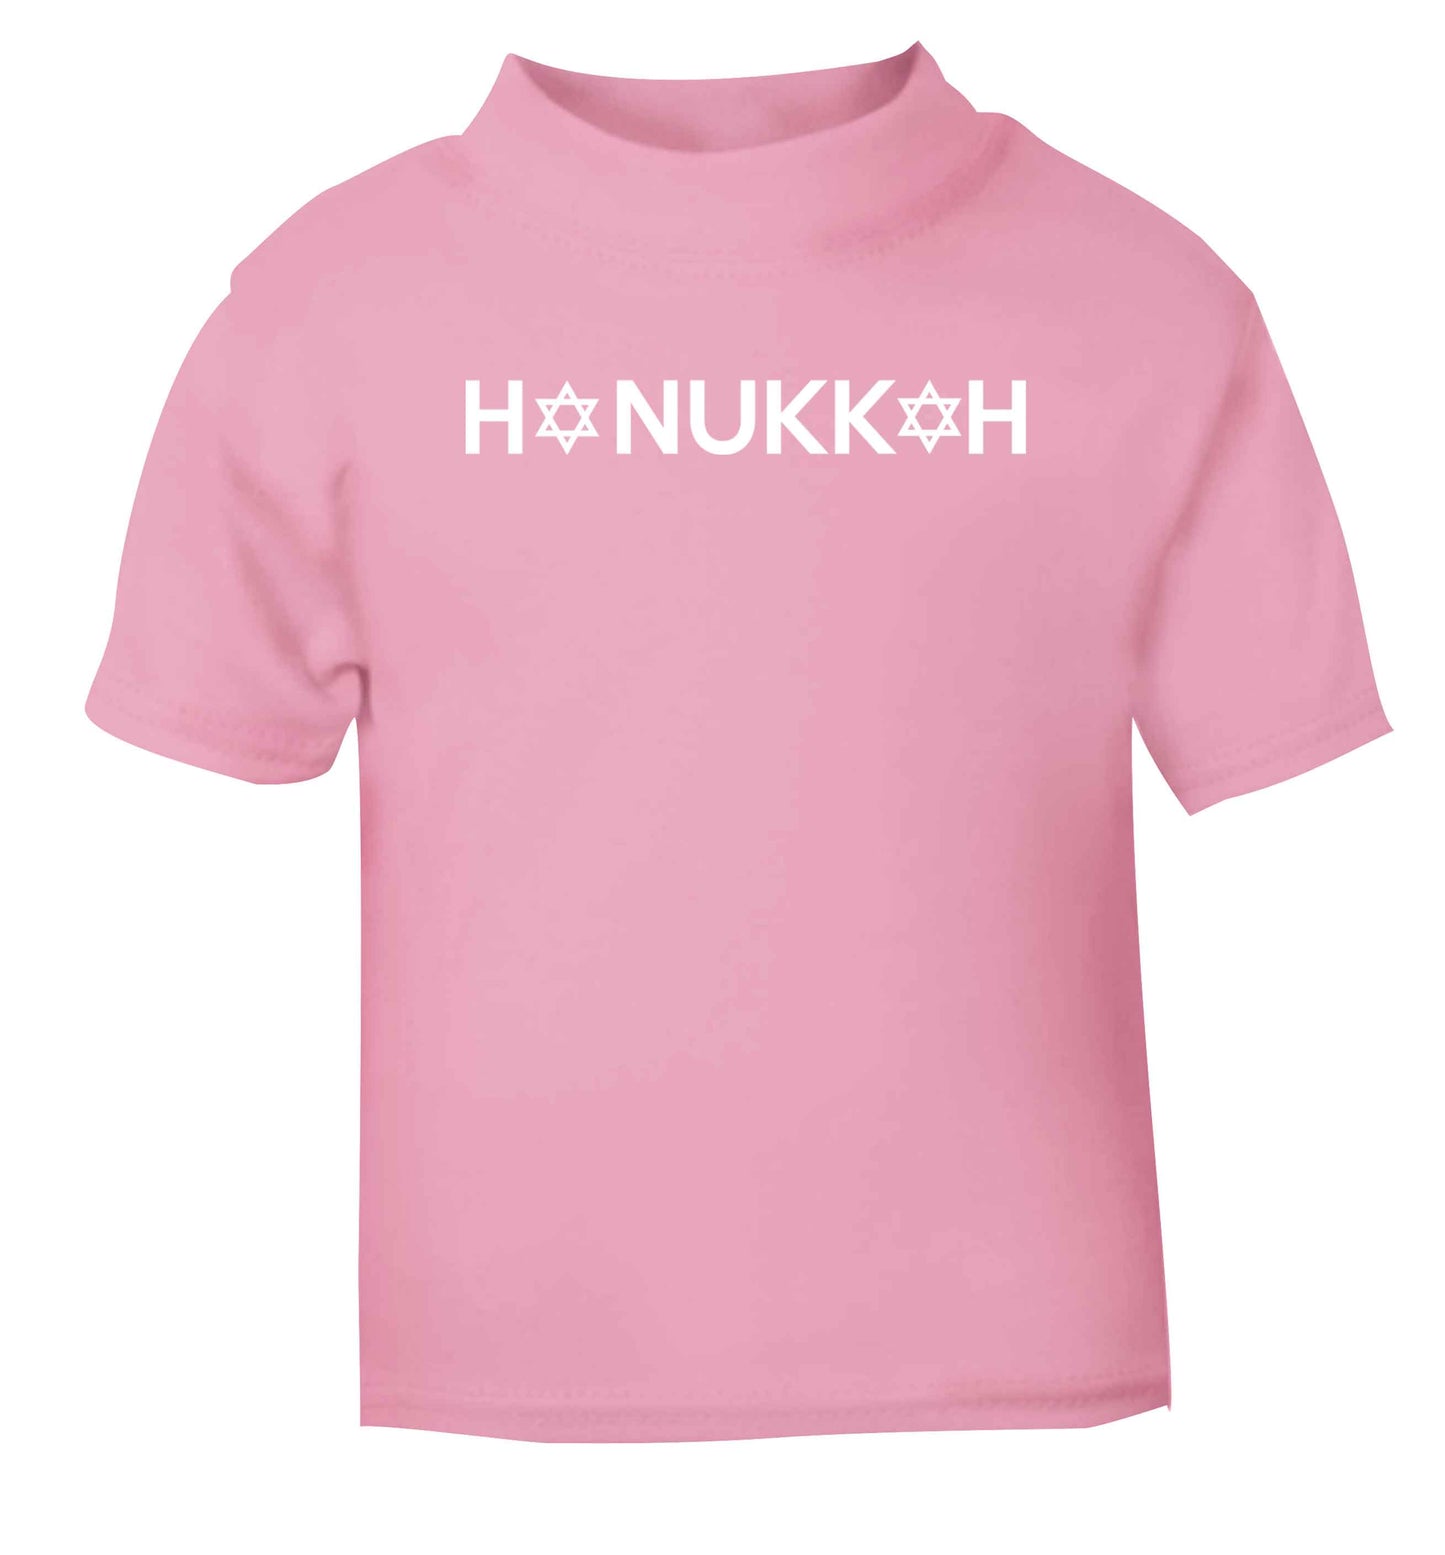 Hanukkah star of david light pink baby toddler Tshirt 2 Years